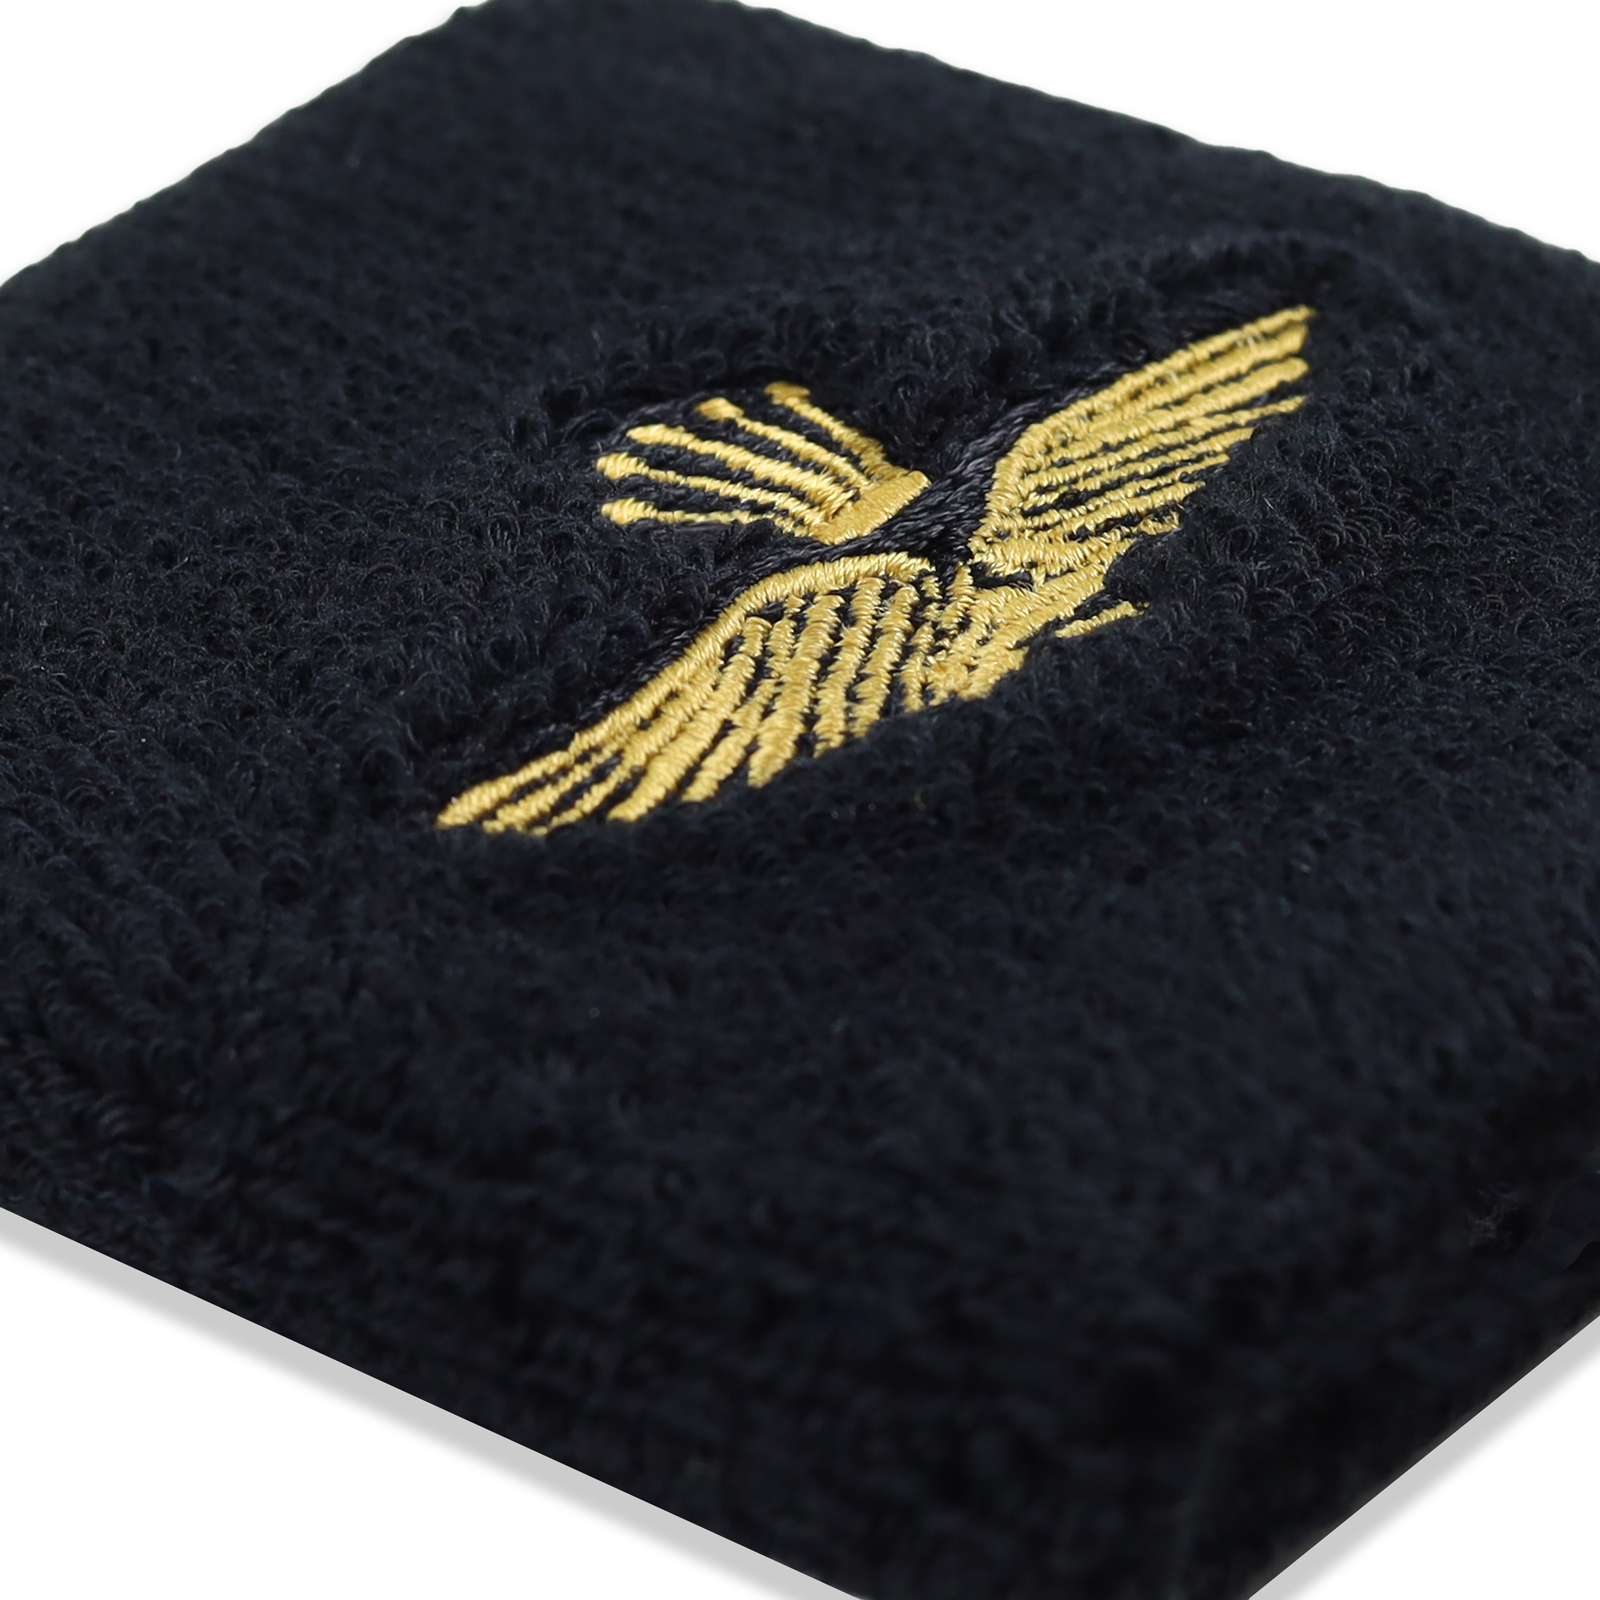 Adler mit Krone - Schweißband